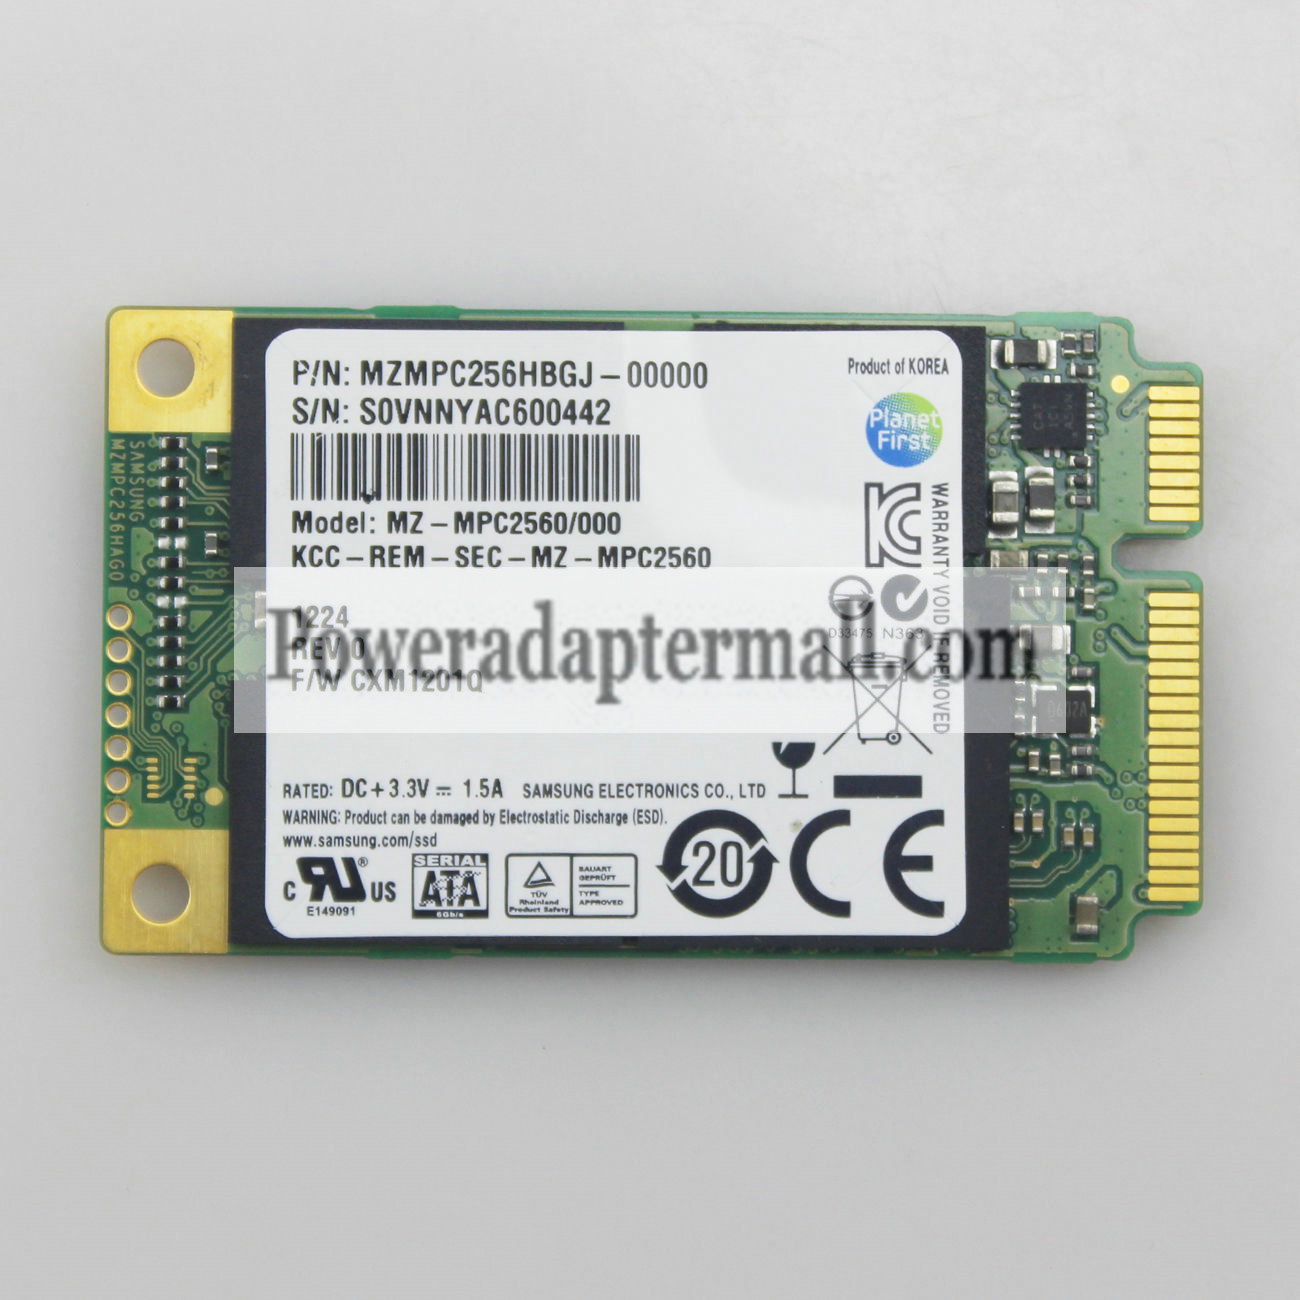 Samsung MSATA mini PCI-E 256GB SSD Solid State Drives for DELL S